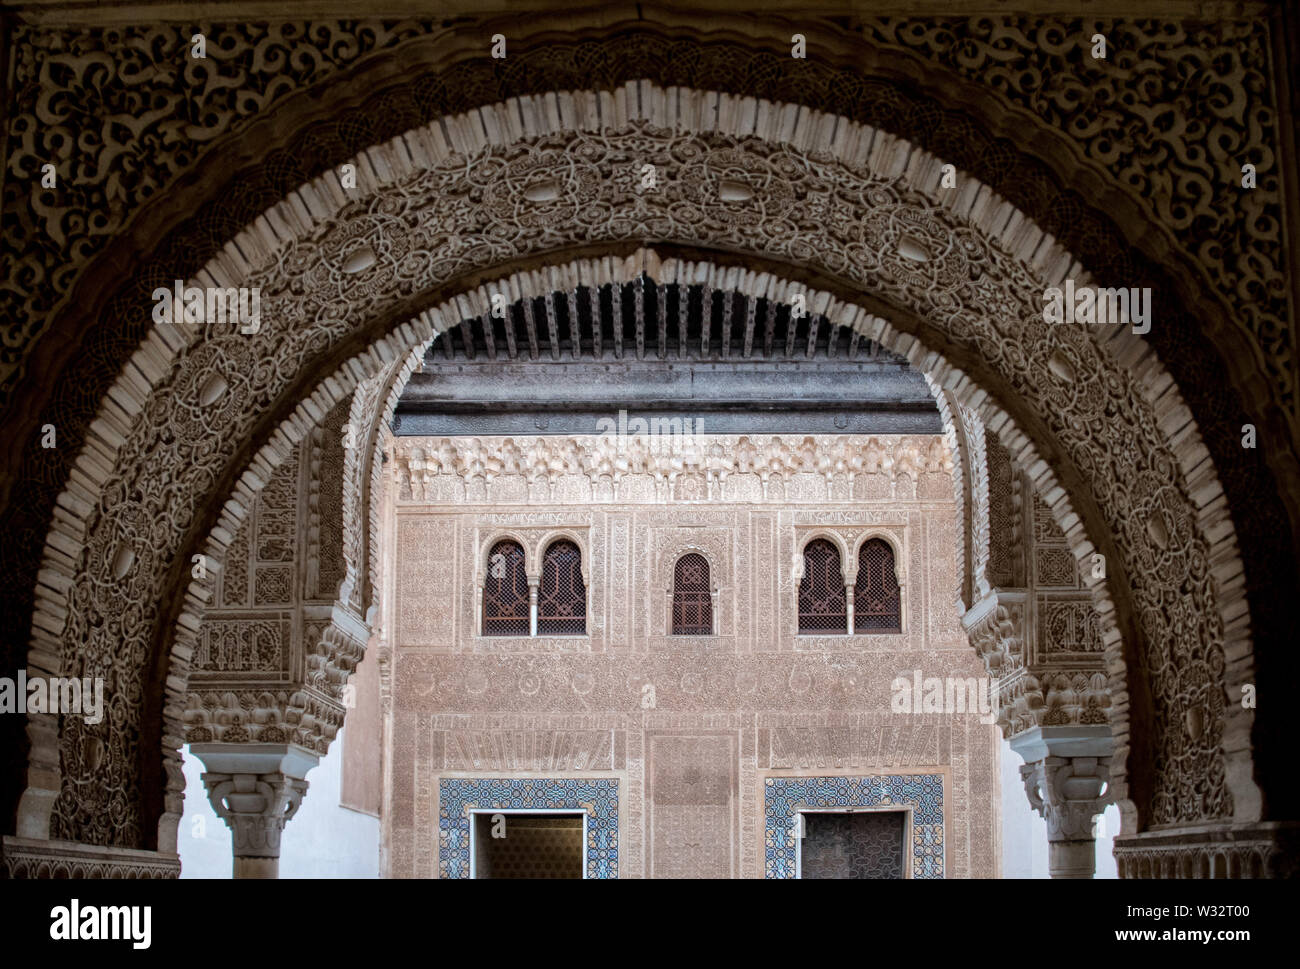 Aufwändig von Hand geschnitzten Bogen mit islamischen Muster von den Mauren auf die Alhambra in Granada, Spanien geschnitzt Stockfoto